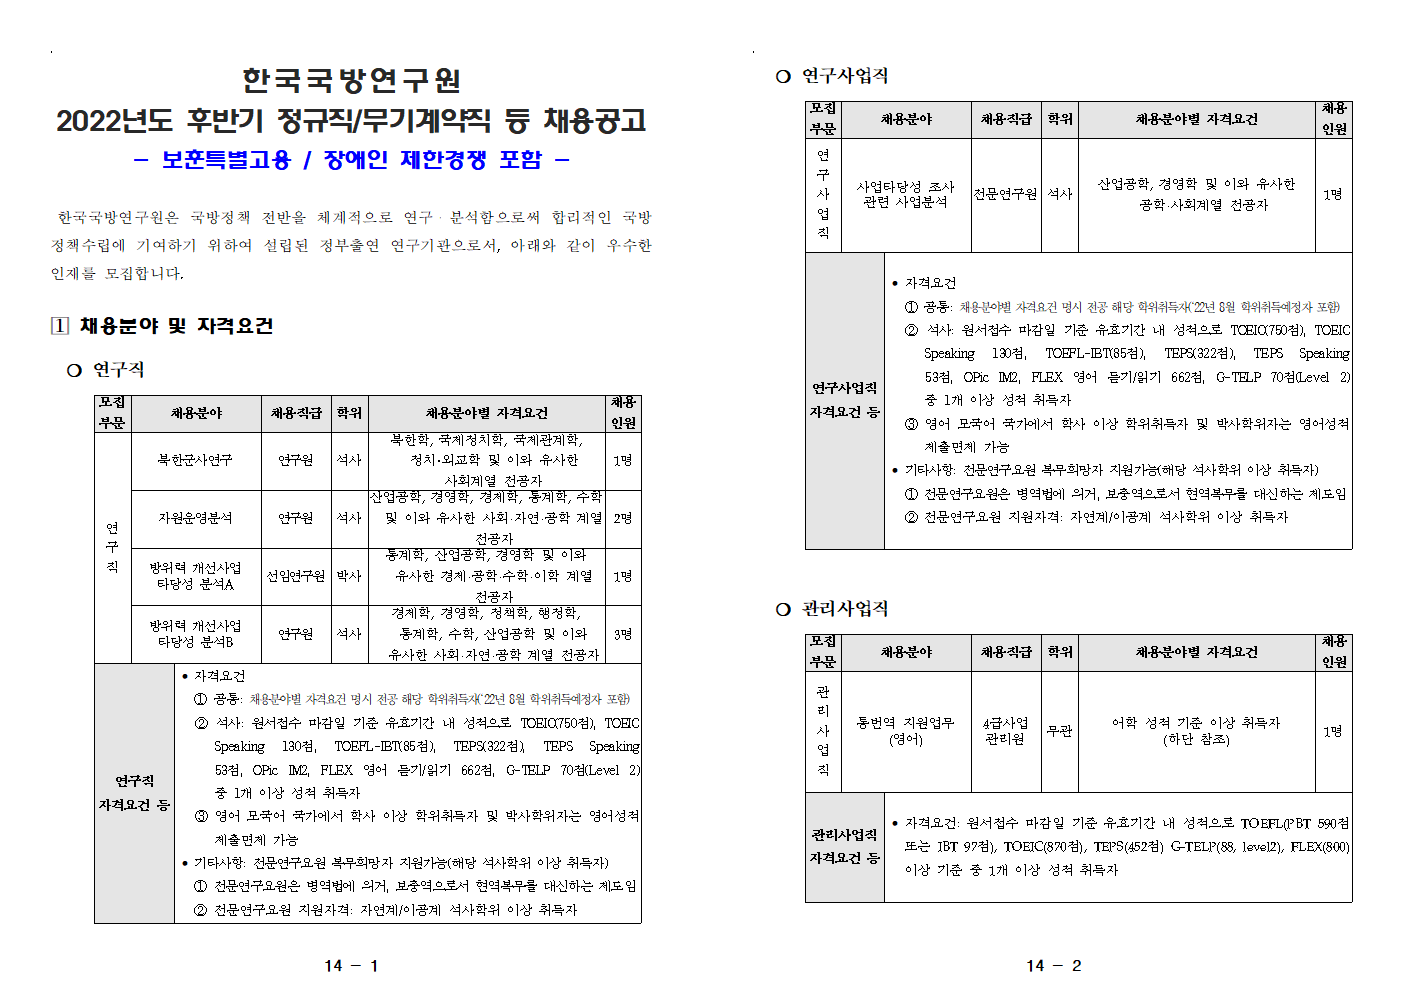 한국국방연구원 채용 - 채용분야 및 자격요건1